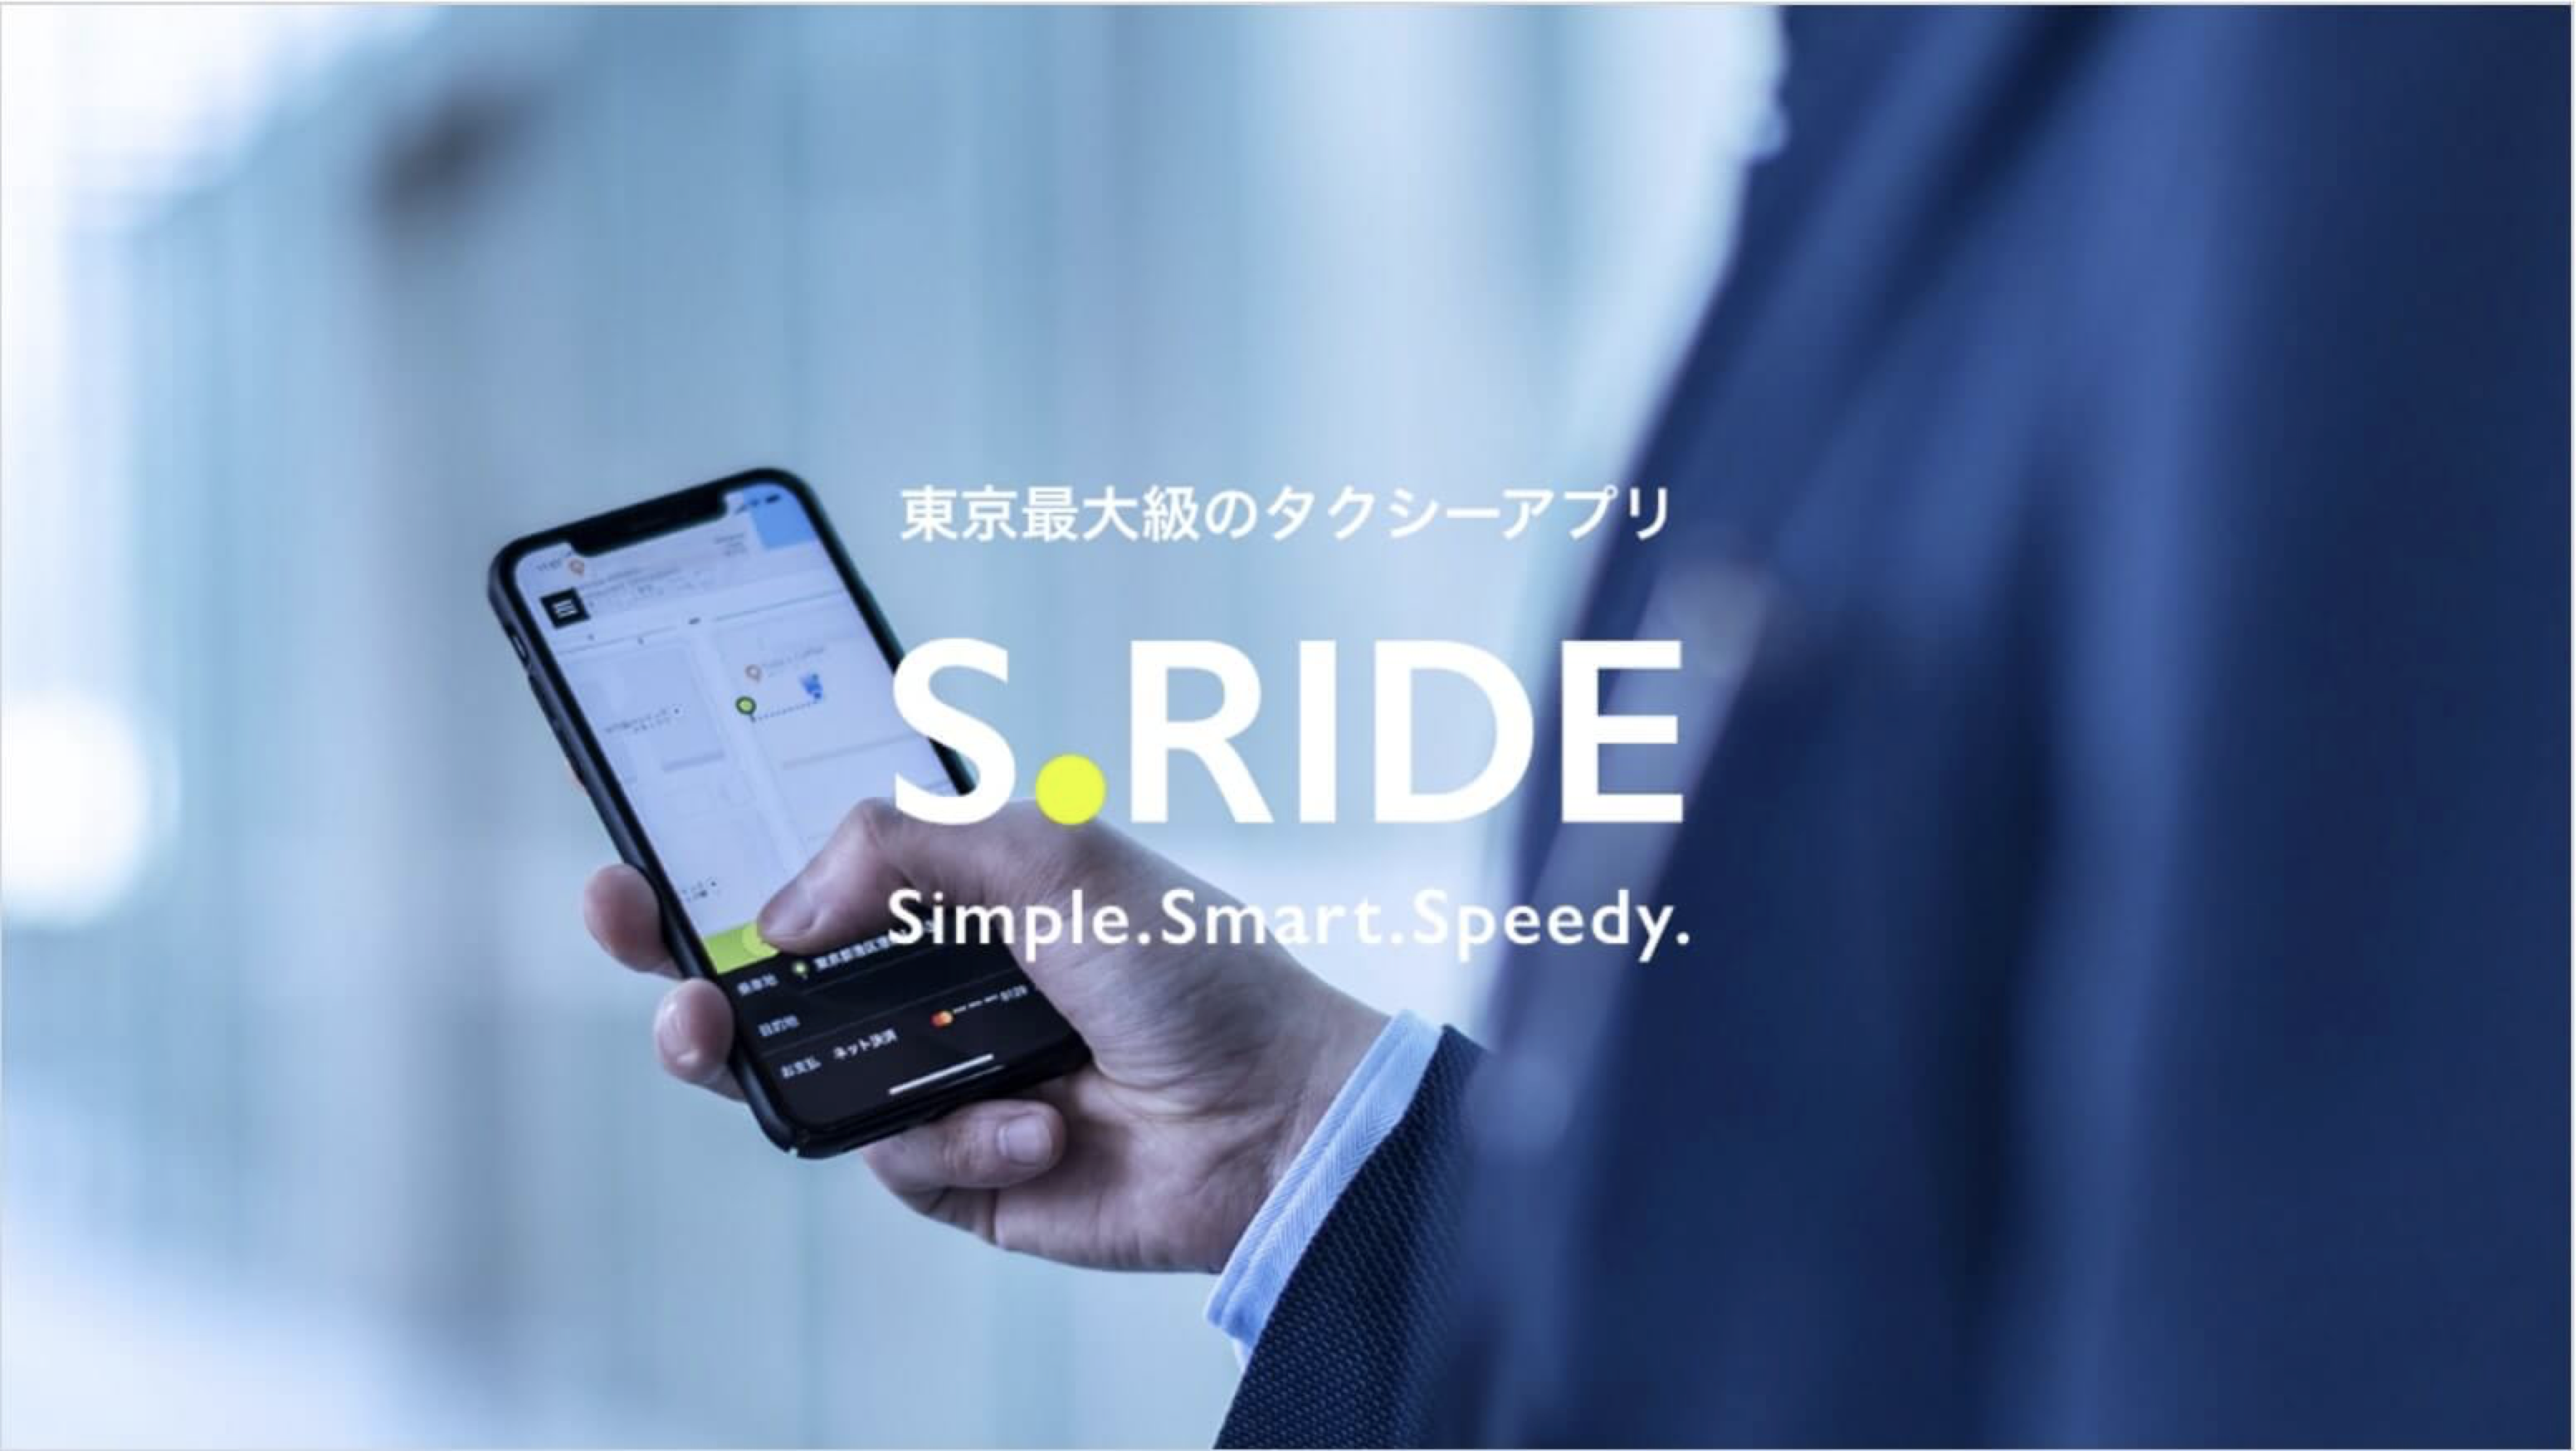 埼玉で使えるタクシーアプリとクーポン情報